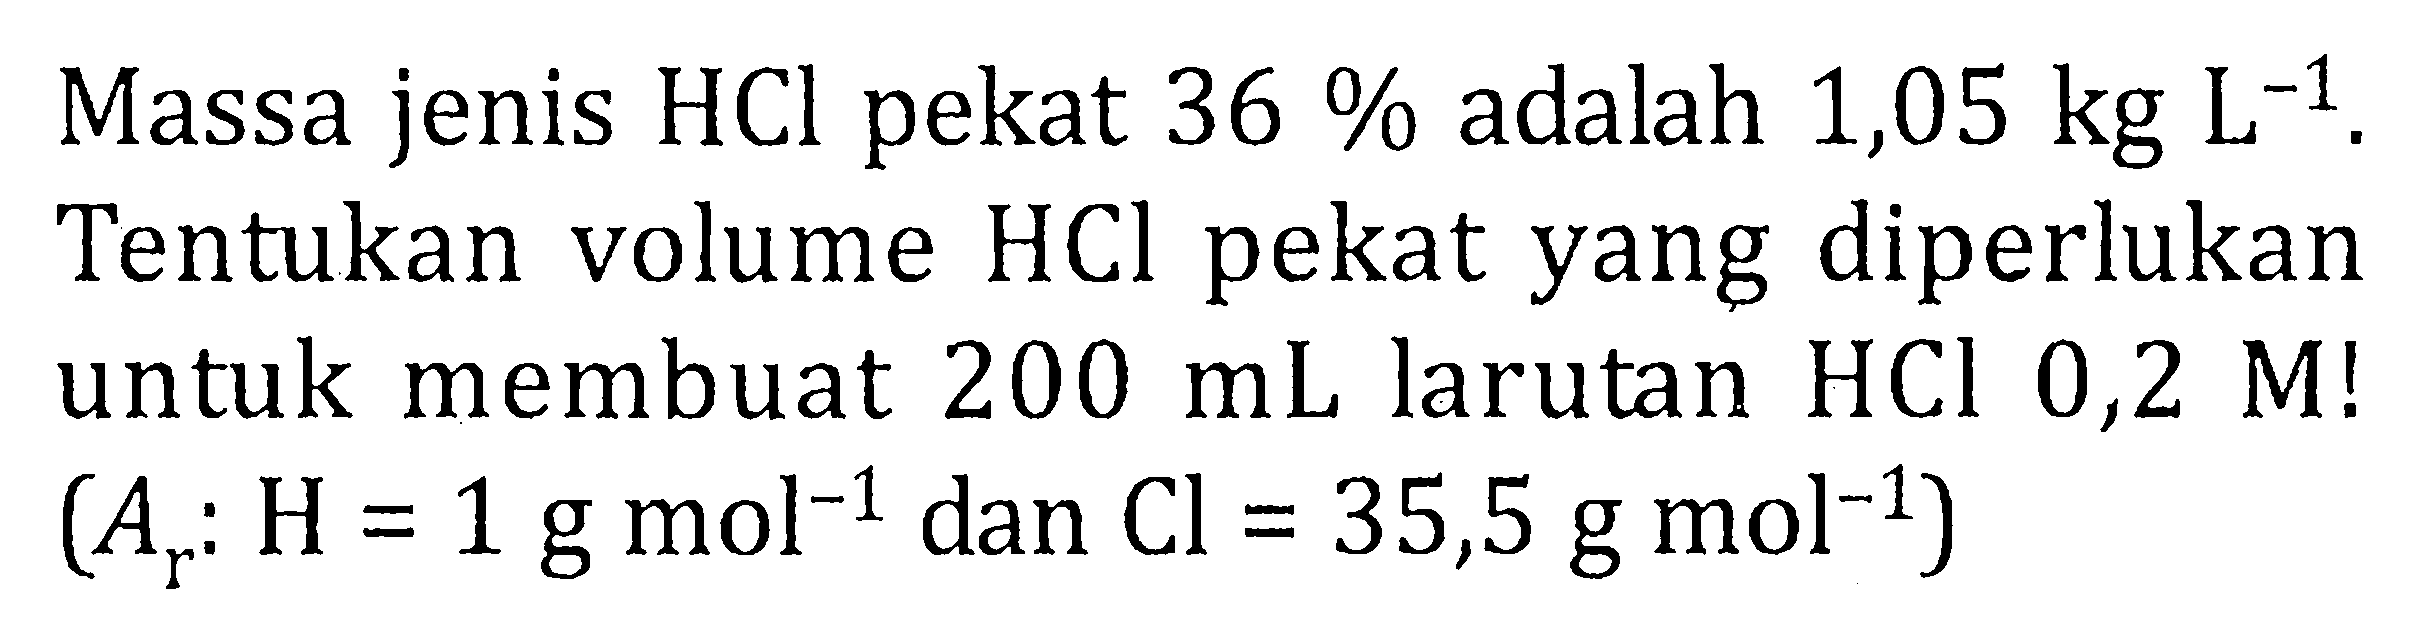 Massa jenis HCl pekat 36 % adalah 1,05 kg L^(-1), Tentukan volume HCl pekat yang diperlukan untuk membuat 200 mL larutan HCL 0,2 M! (Ar: H= 1g mol^(-1) dan Cl = 35,5 g mol^(-1))